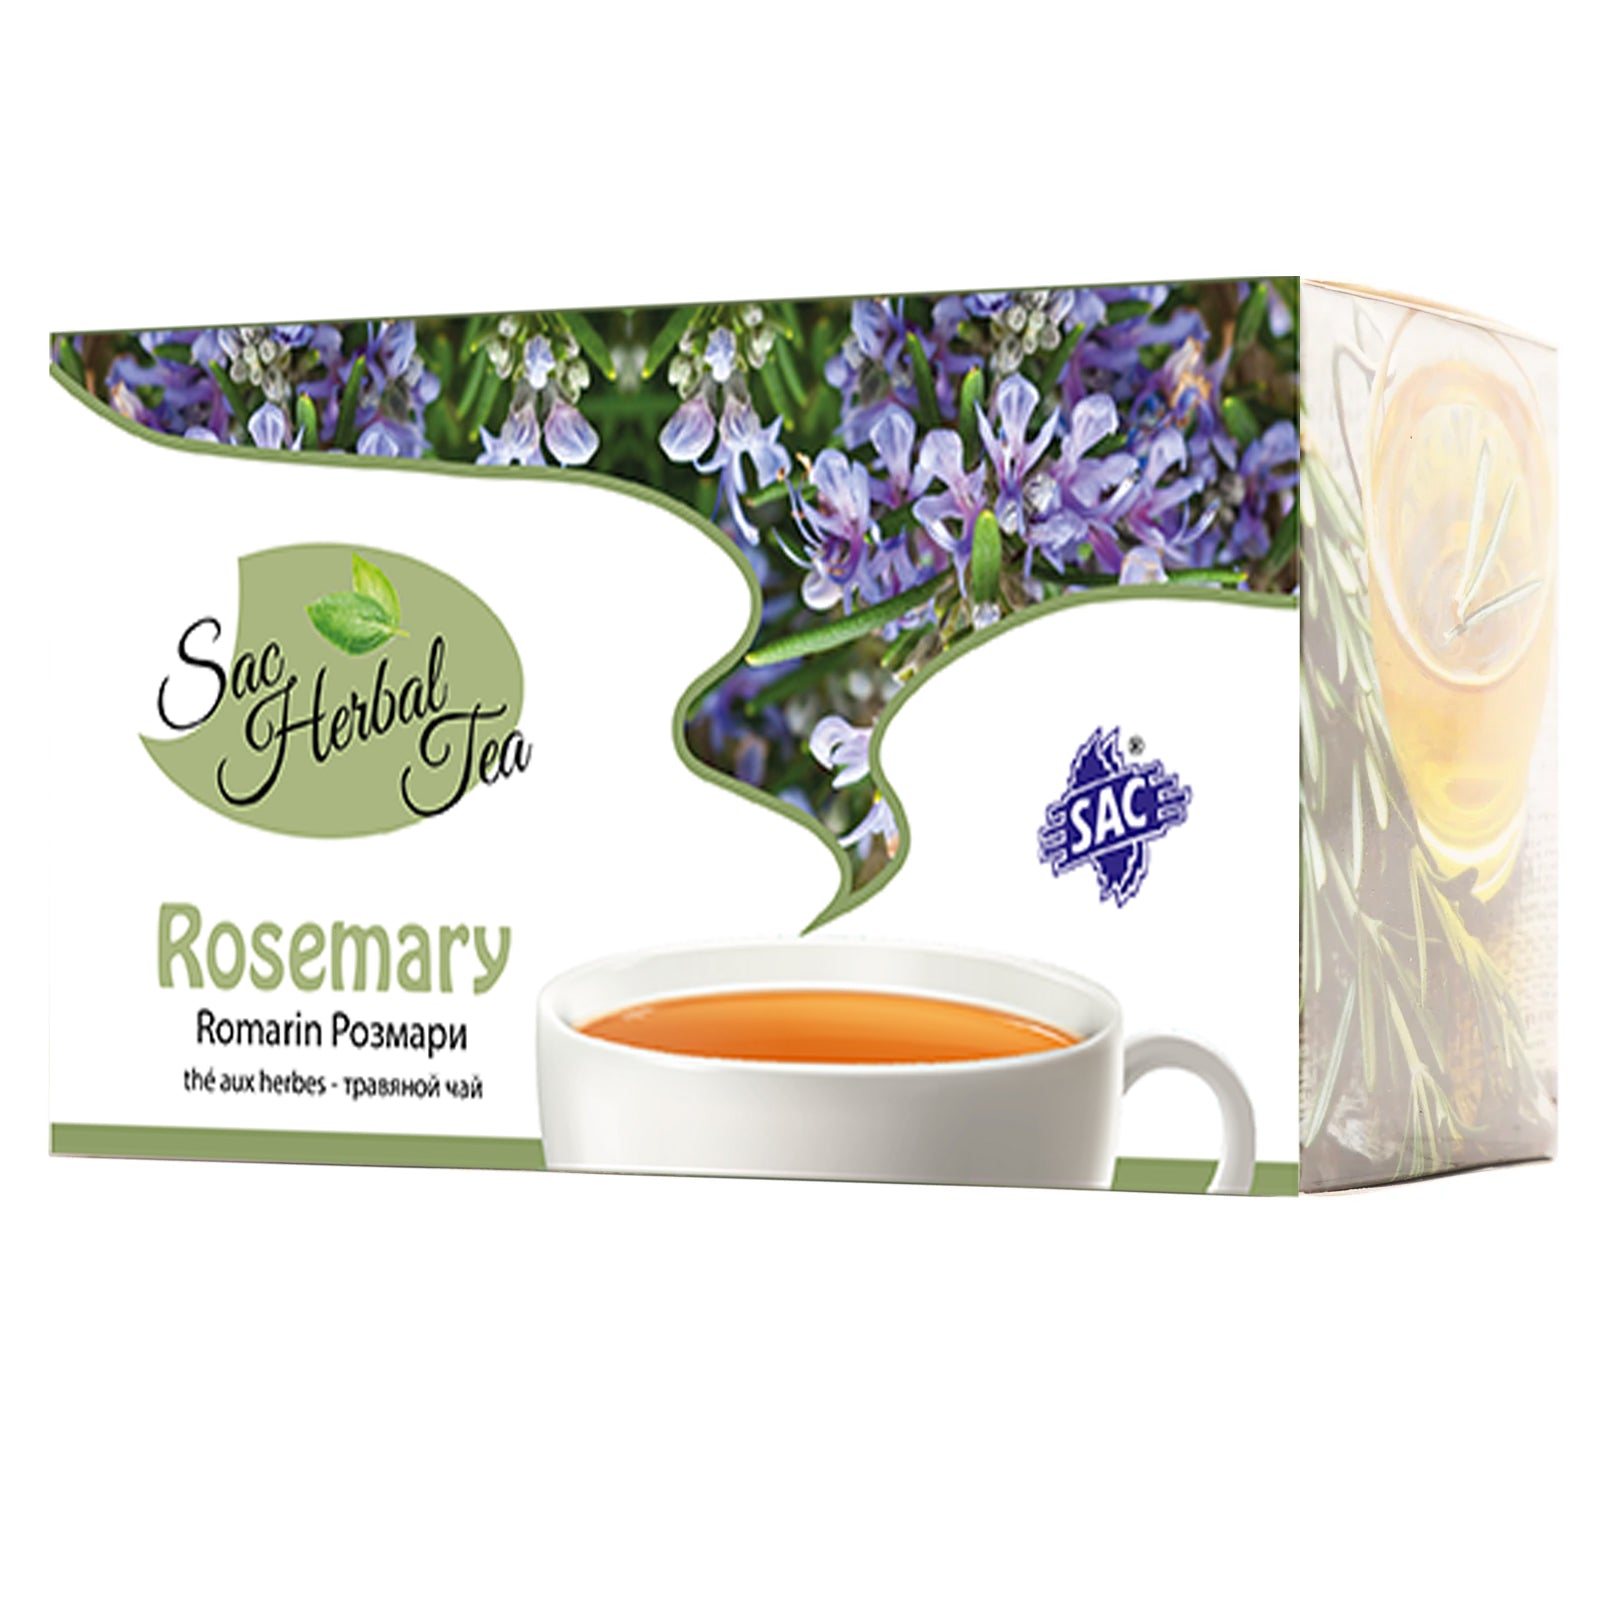 Rosemarry Herbal Tea ( 20 Sachet per box)